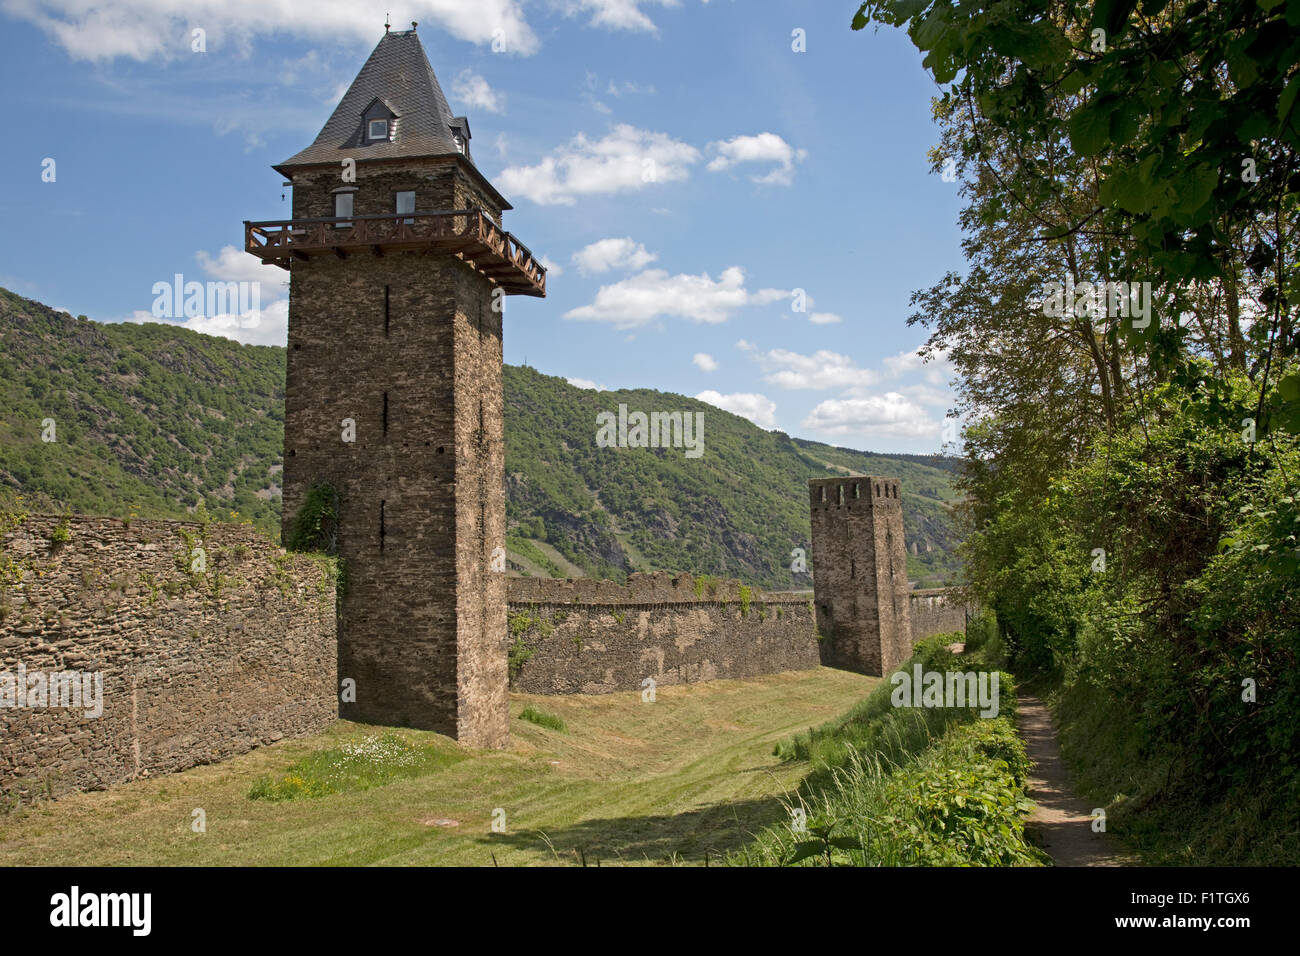 La vieille ville et Tour wall Oberwesel Allemagne Rhénanie-palatinat Site du patrimoine mondial de l'UNESCO Banque D'Images